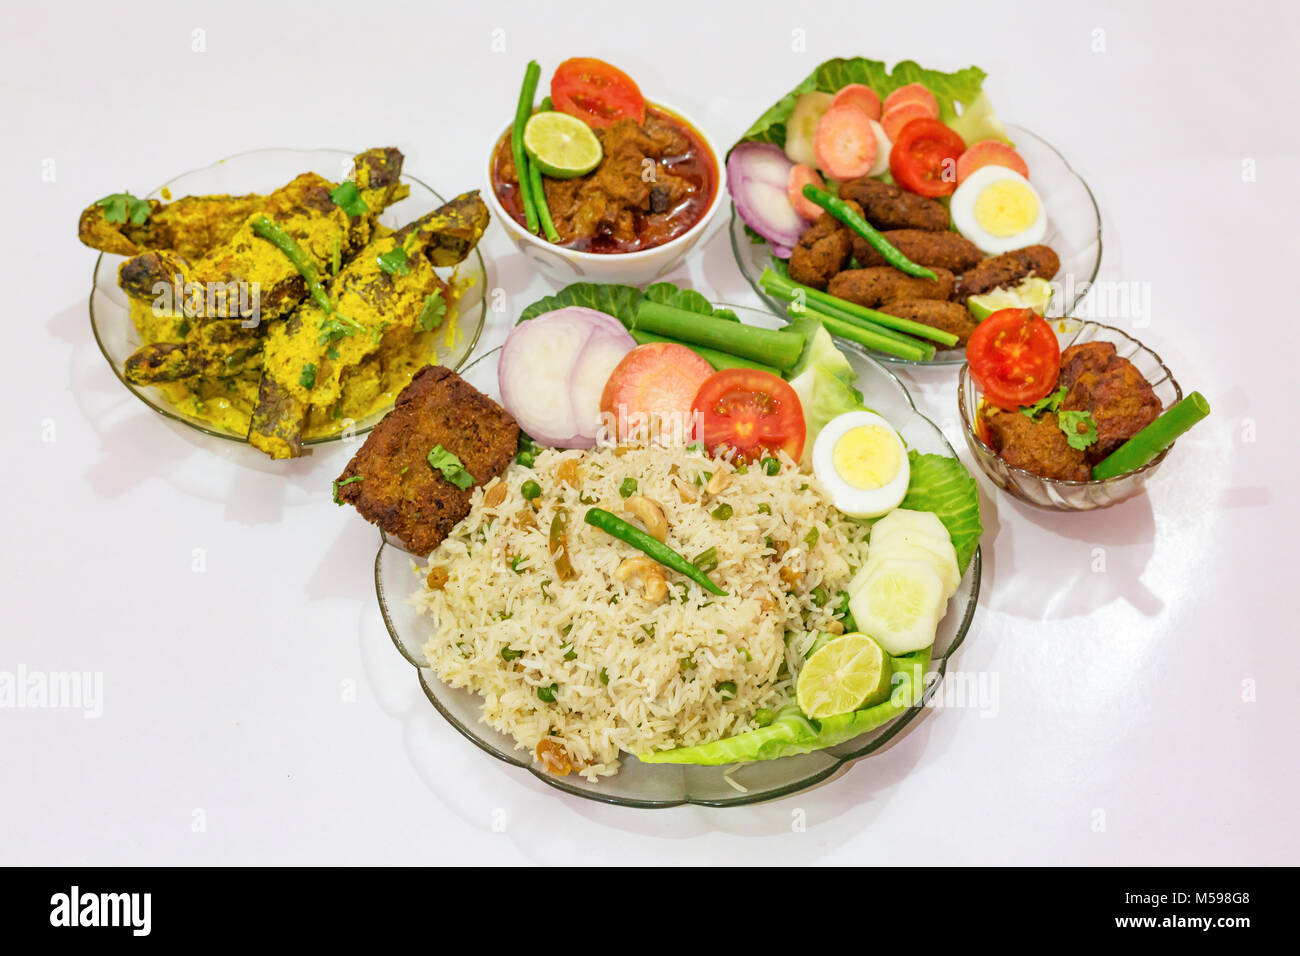 Bengali populaires indiens les plats avec du riz frit, les bâtonnets de poisson, mutton masala curry et tangra curry de poisson garni de salade. Banque D'Images